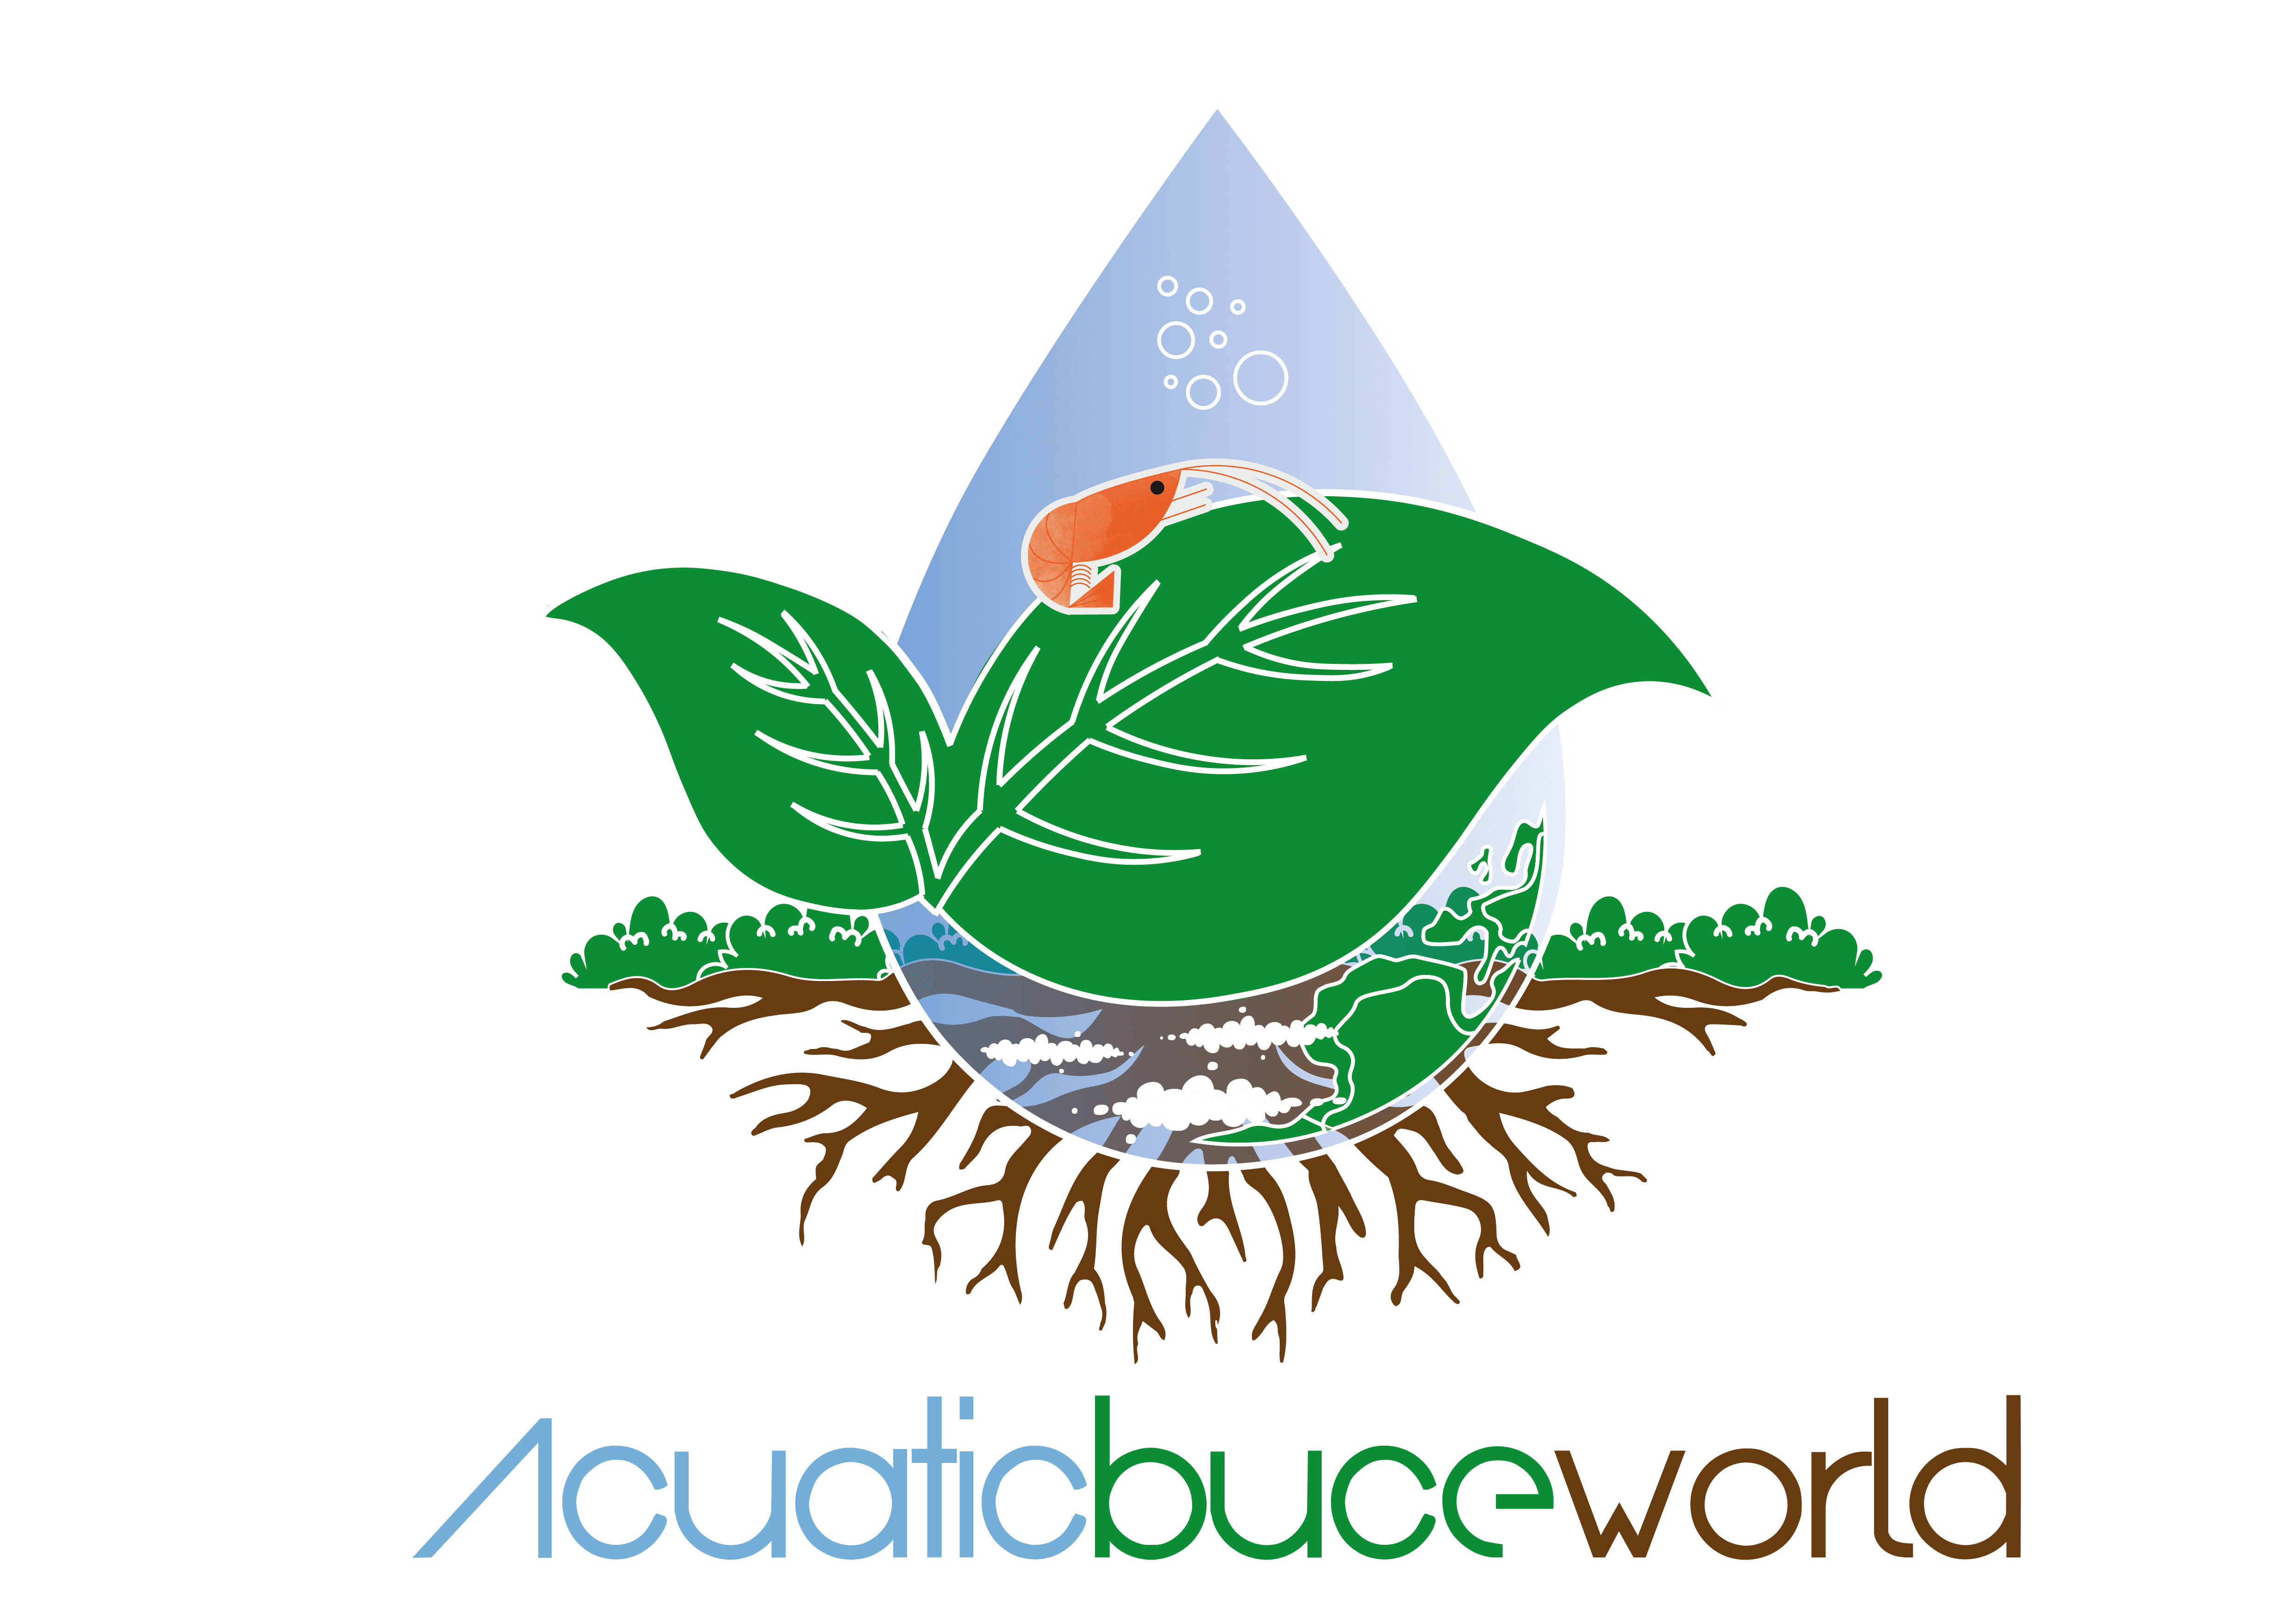 Aquatic Buceworld